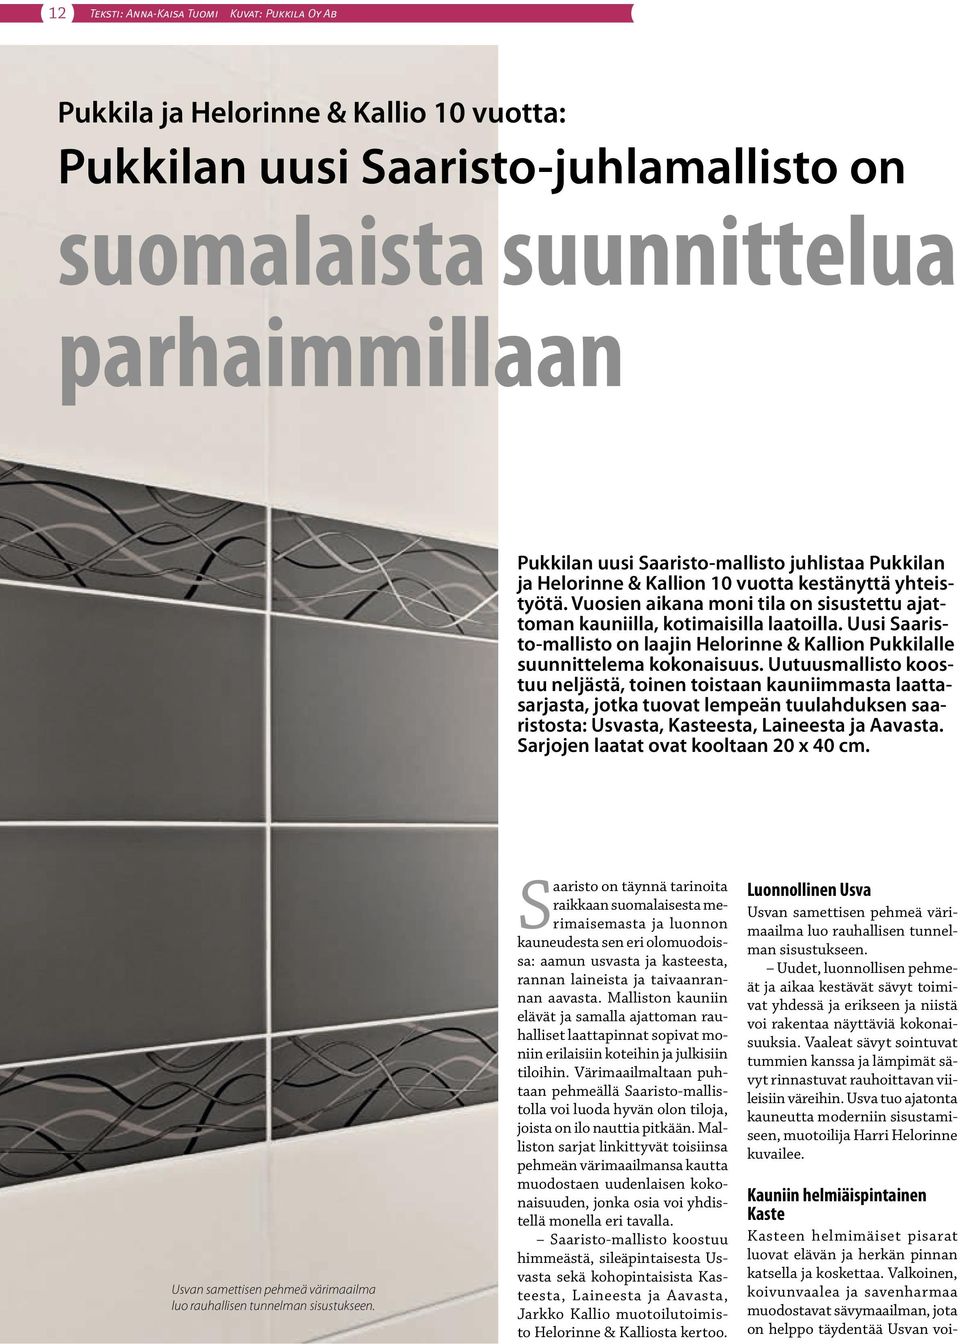 Uusi Saaristo-mallisto on laajin Helorinne & Kallion Pukkilalle suunnittelema kokonaisuus.